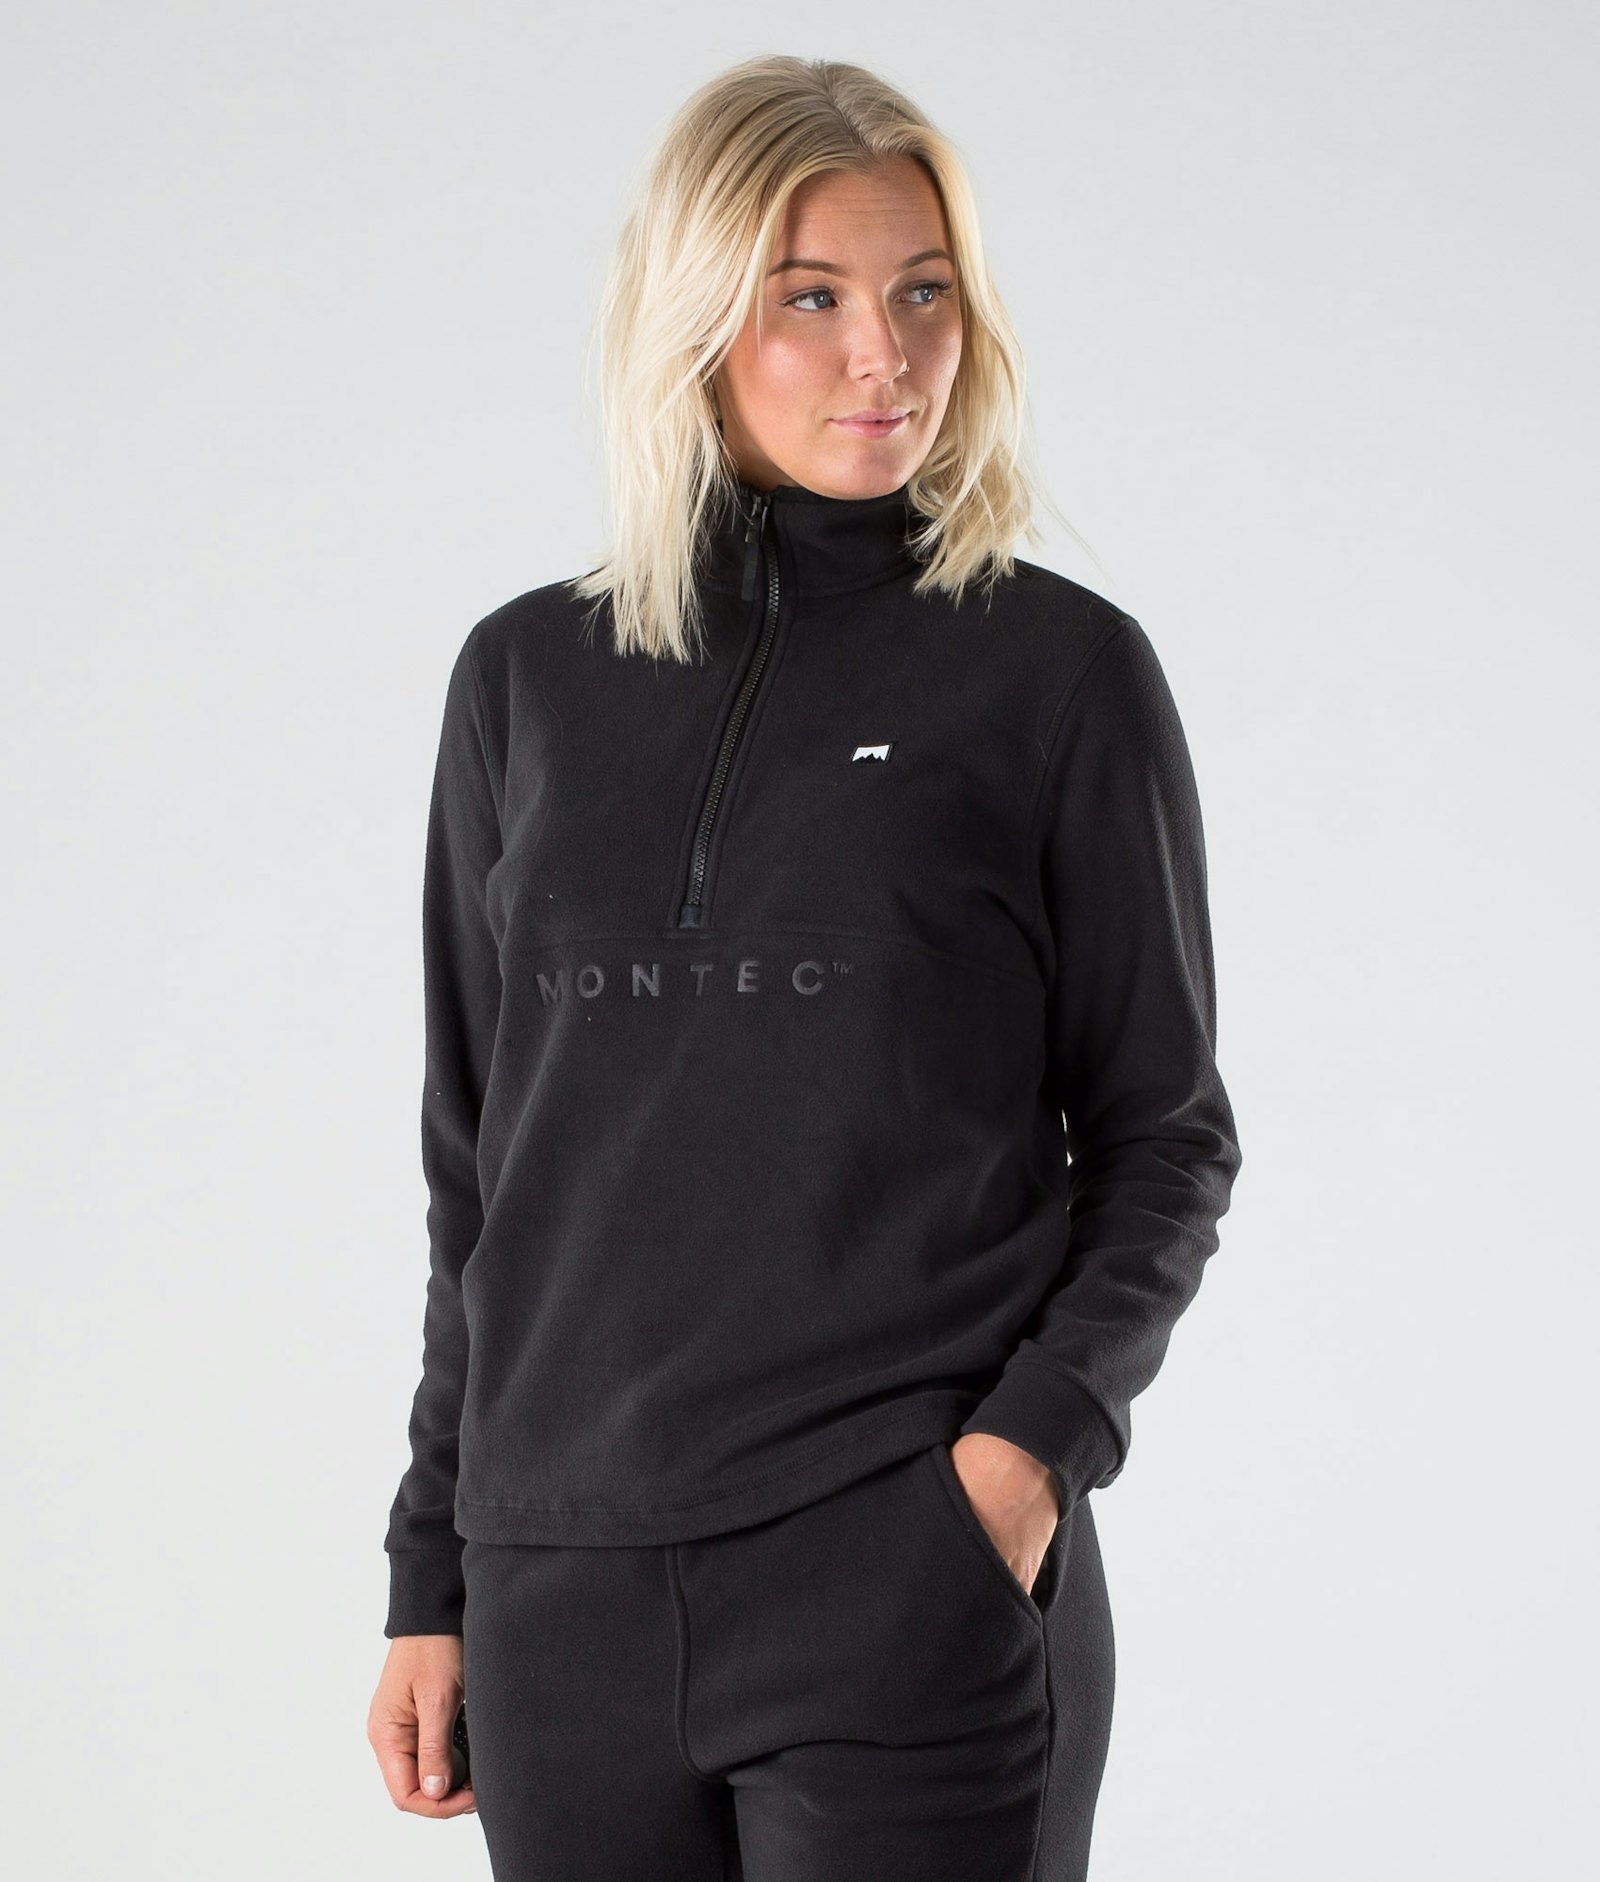 Echo W 2019 Fleece Sweater Women Black